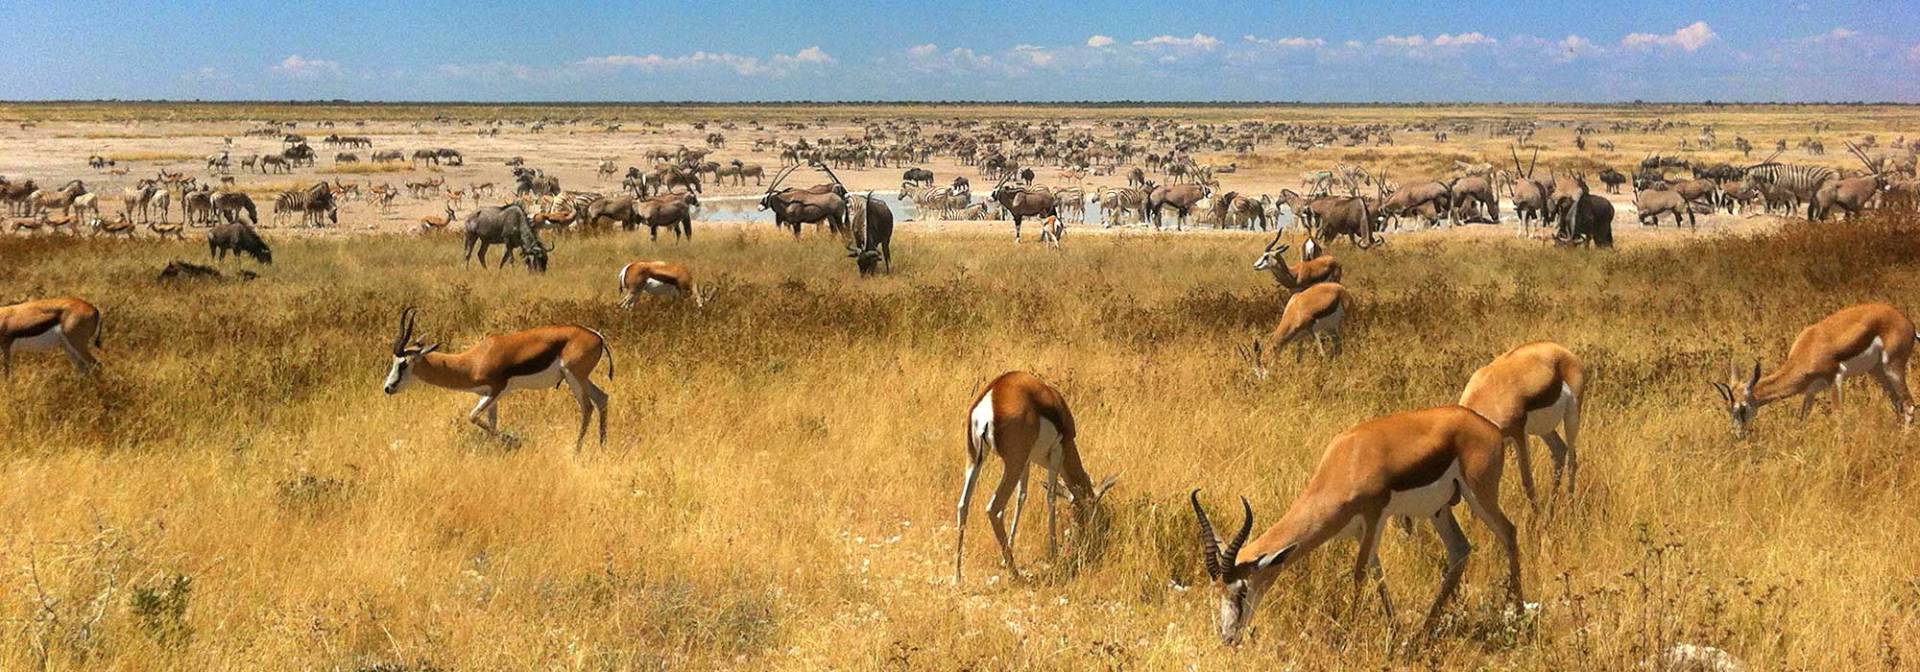 Tierherden im Etoscha Nationalpark